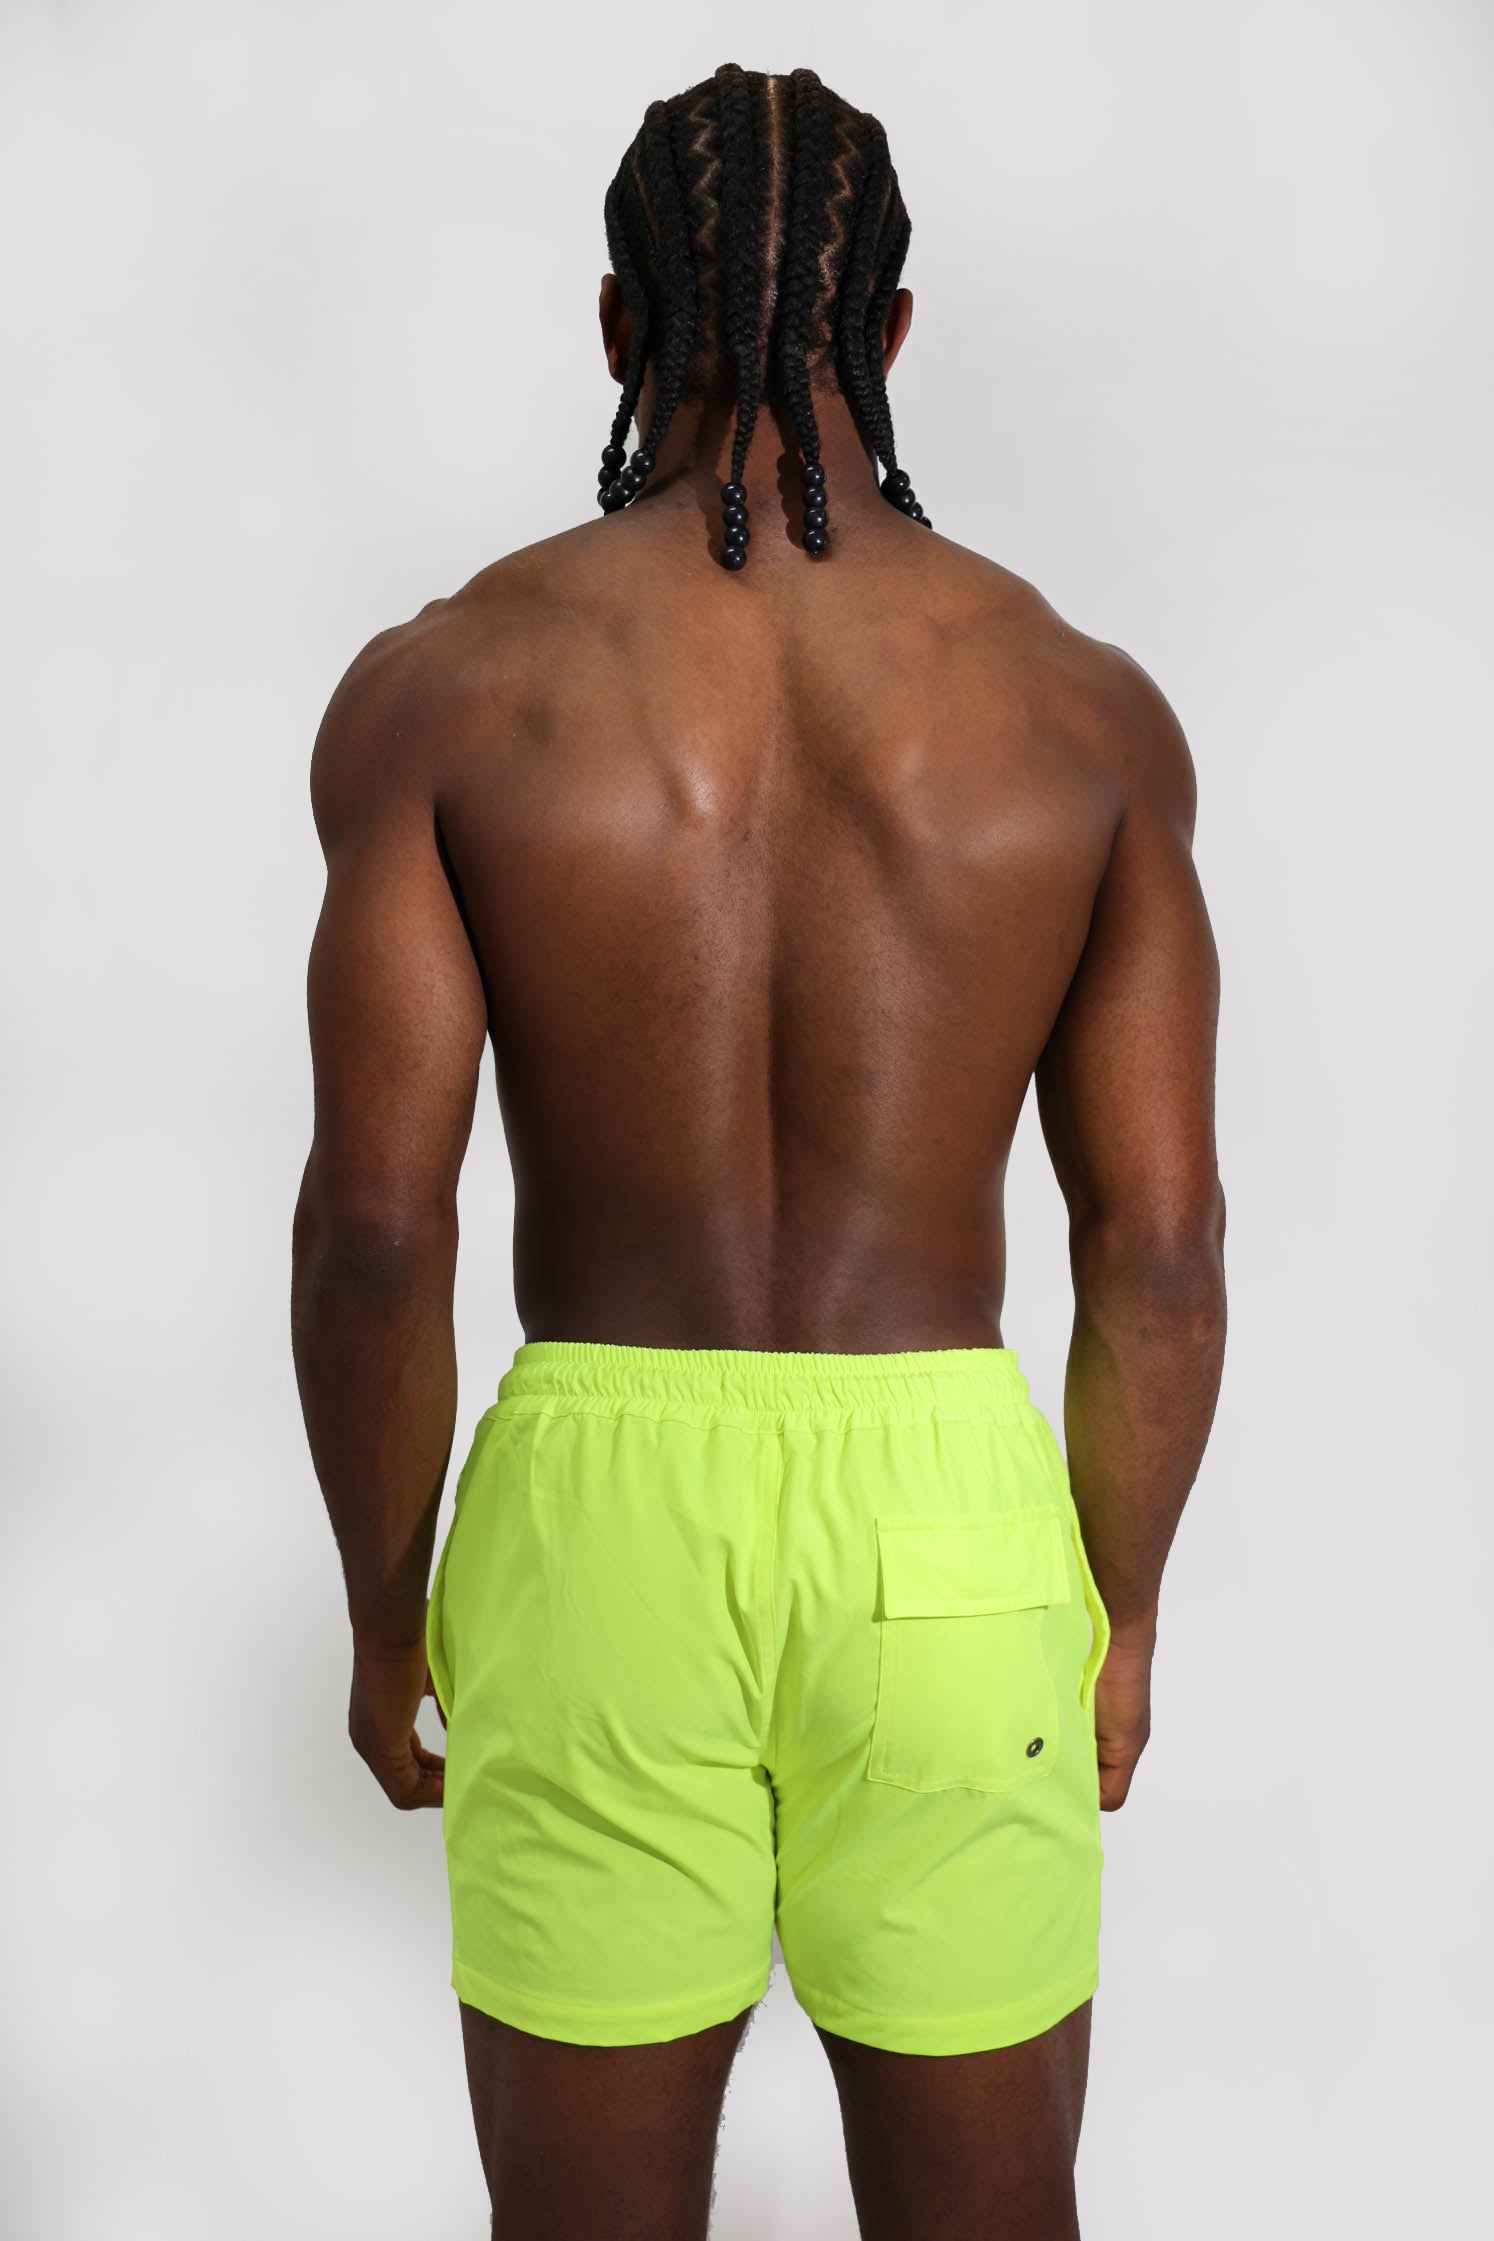 Neon Yellow Shorts 4.5"